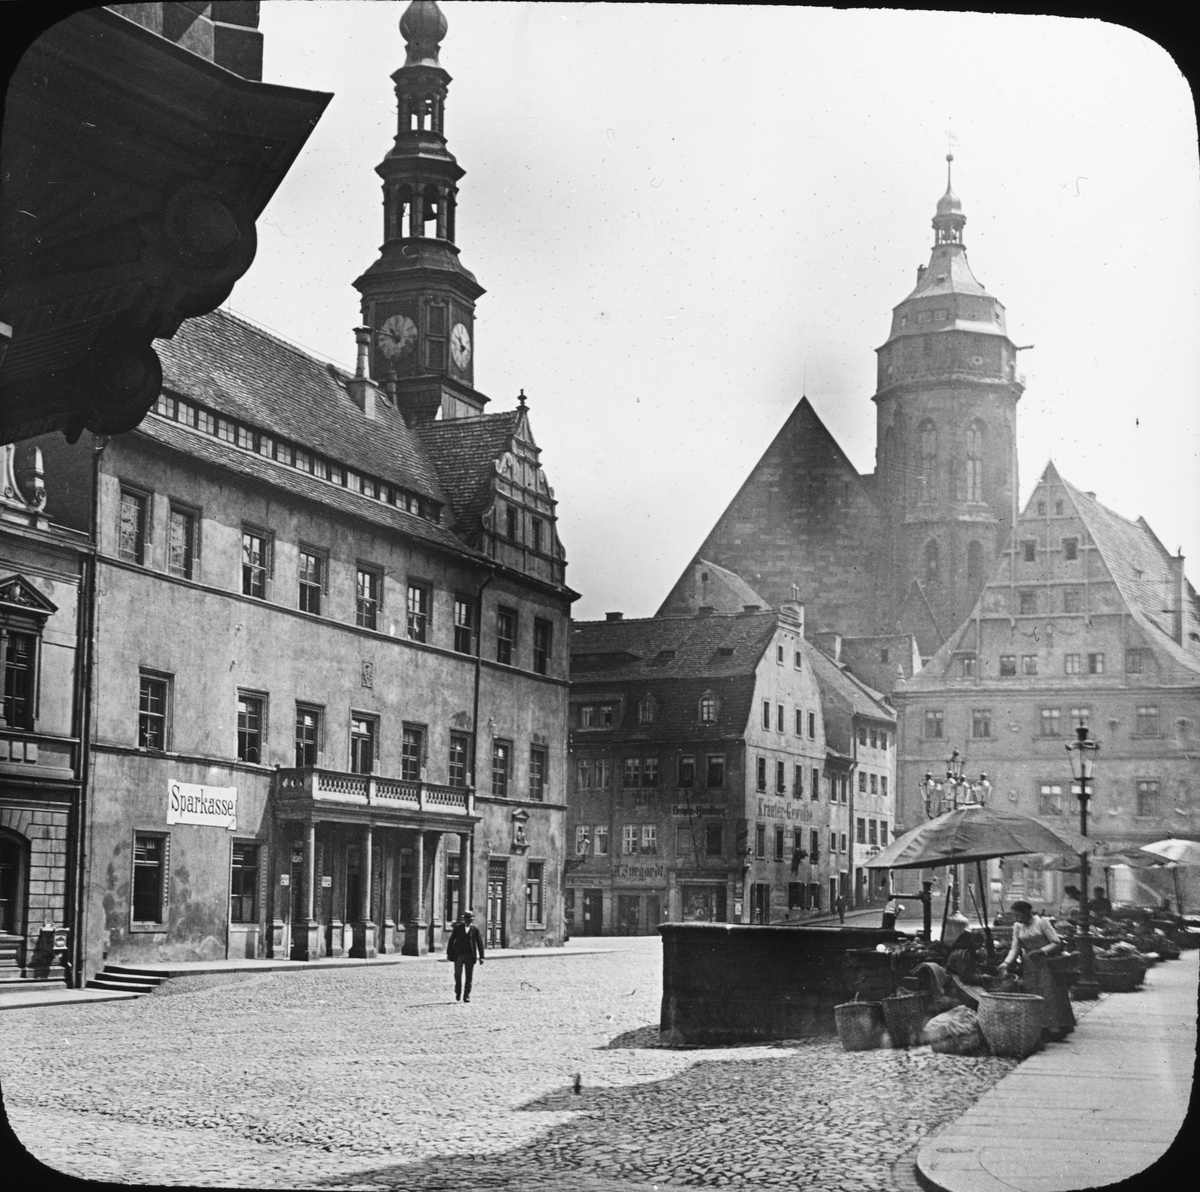 Skioptikonbild med motiv från Pirna med  Marienkirche i bakgrunden.
Bilden har förvarats i kartong märkt: ?